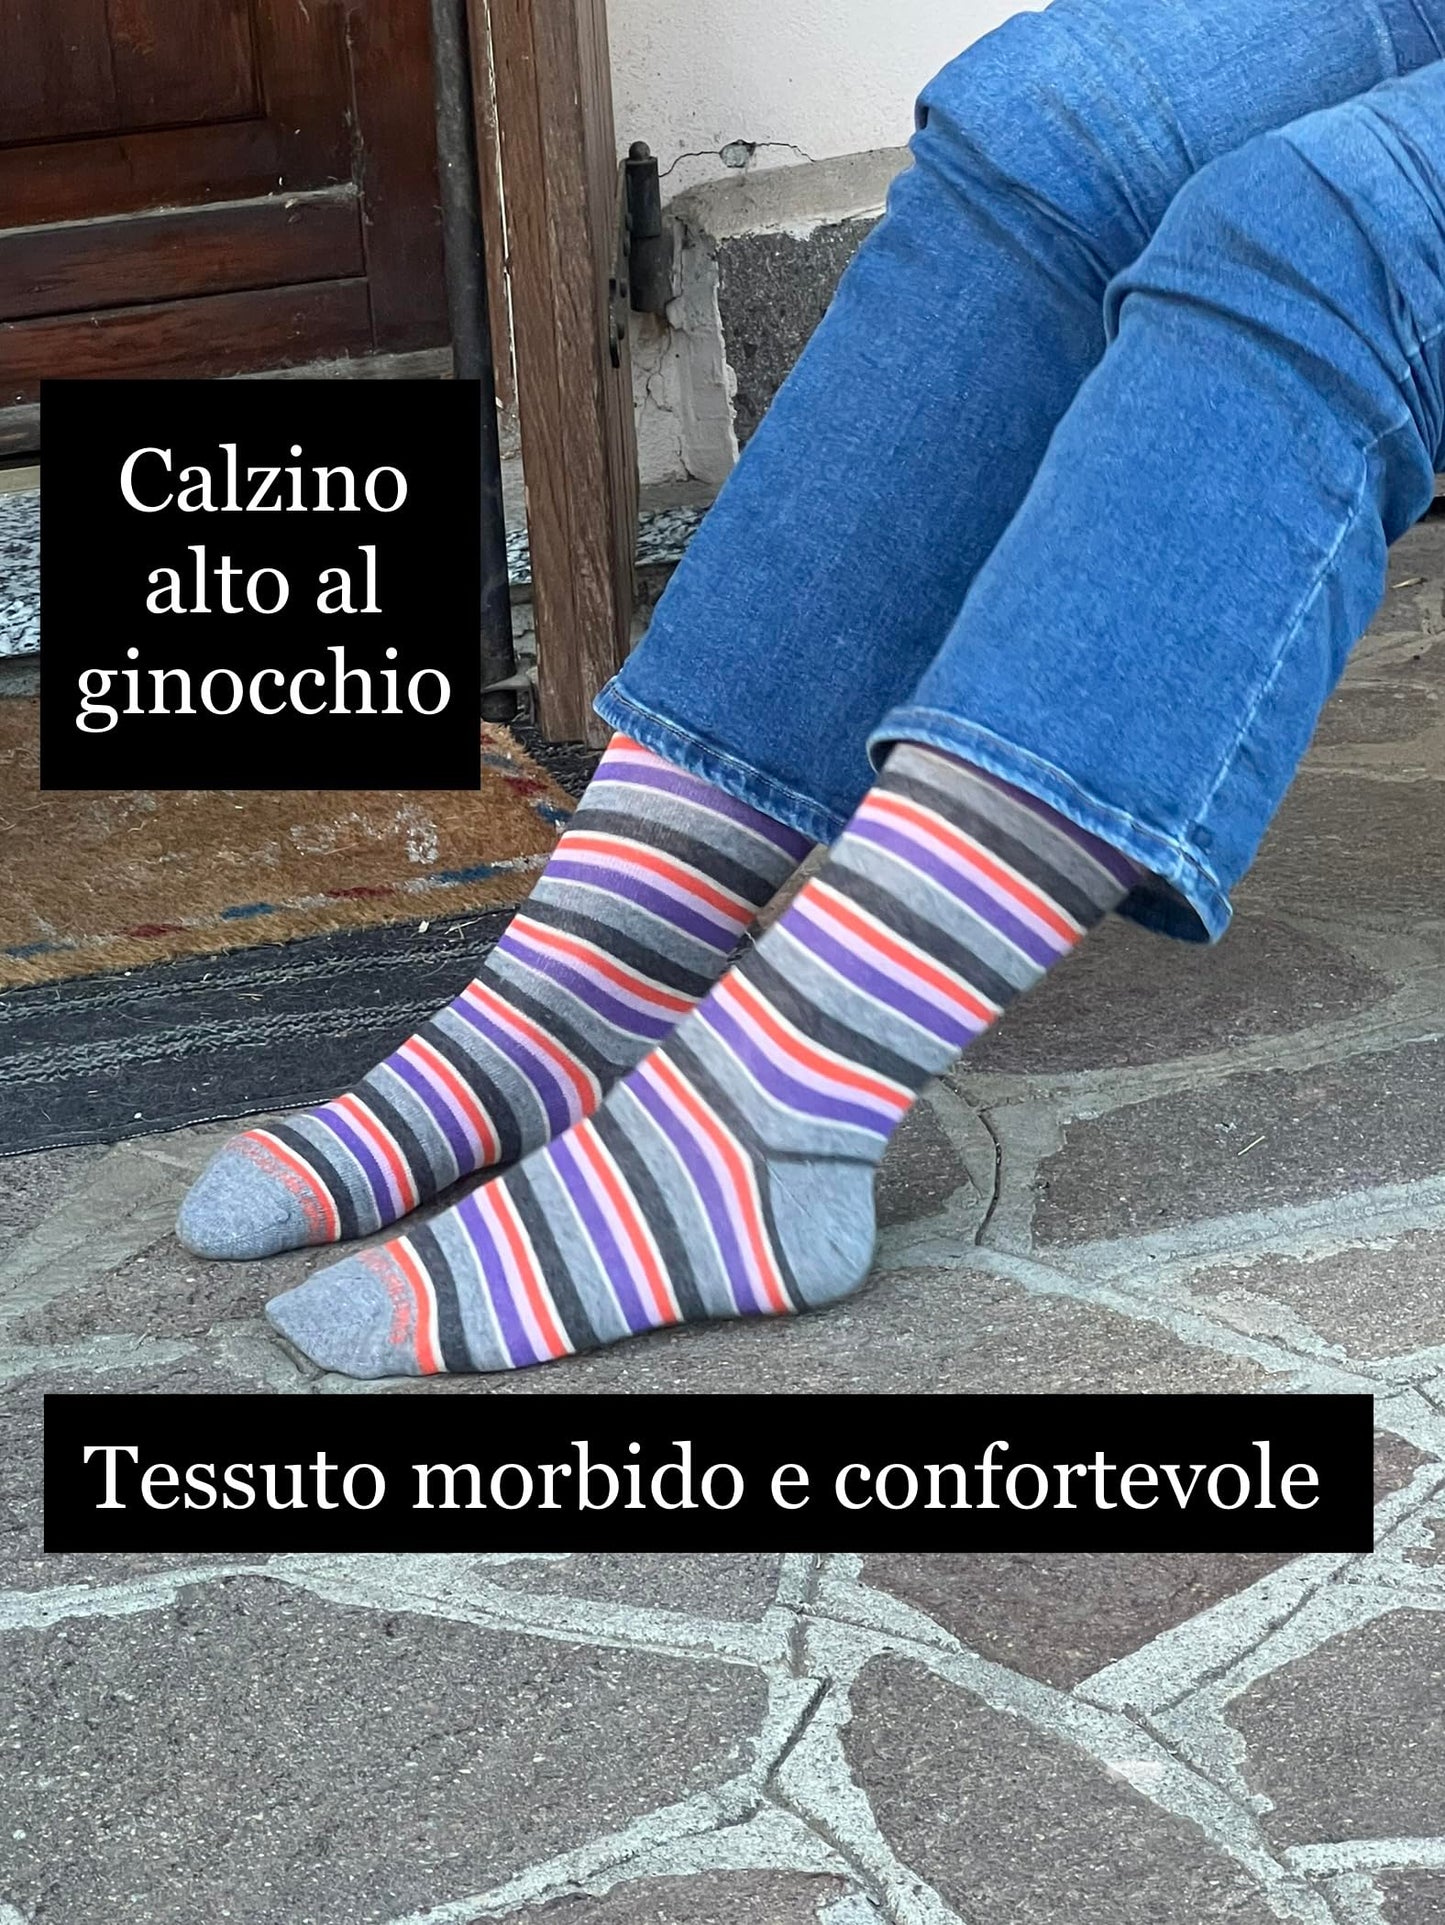 Calze Donna Invernali Lunghe Caldo Cotone Fantasia Righe Pois Termiche Colorate Made in Italy